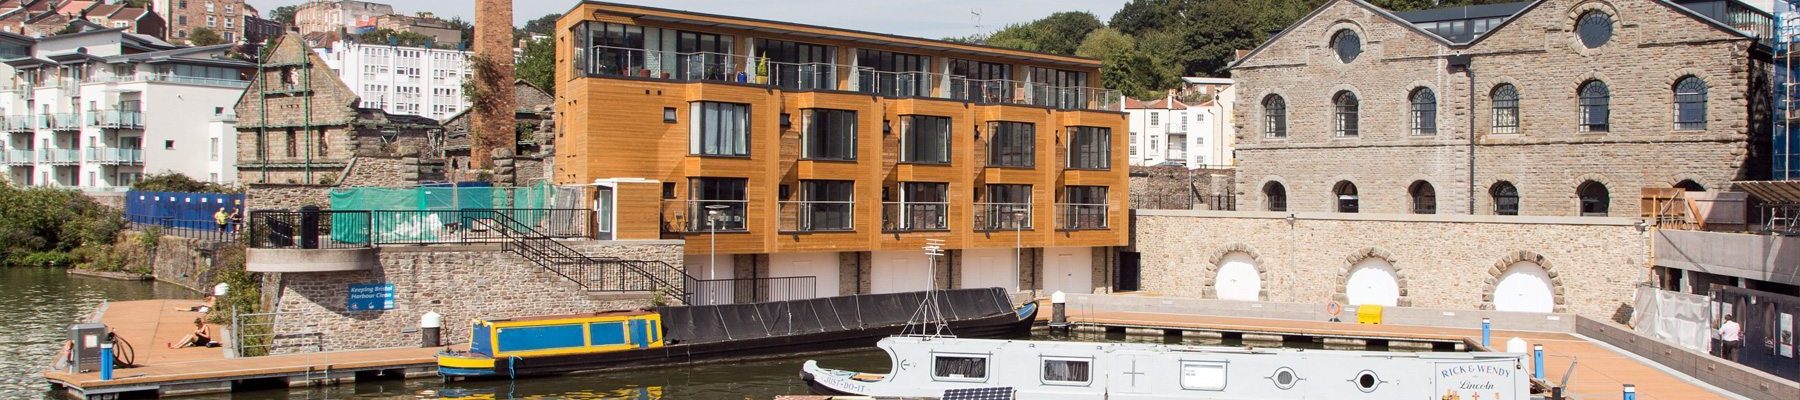 Boat House Bristol - Evotech